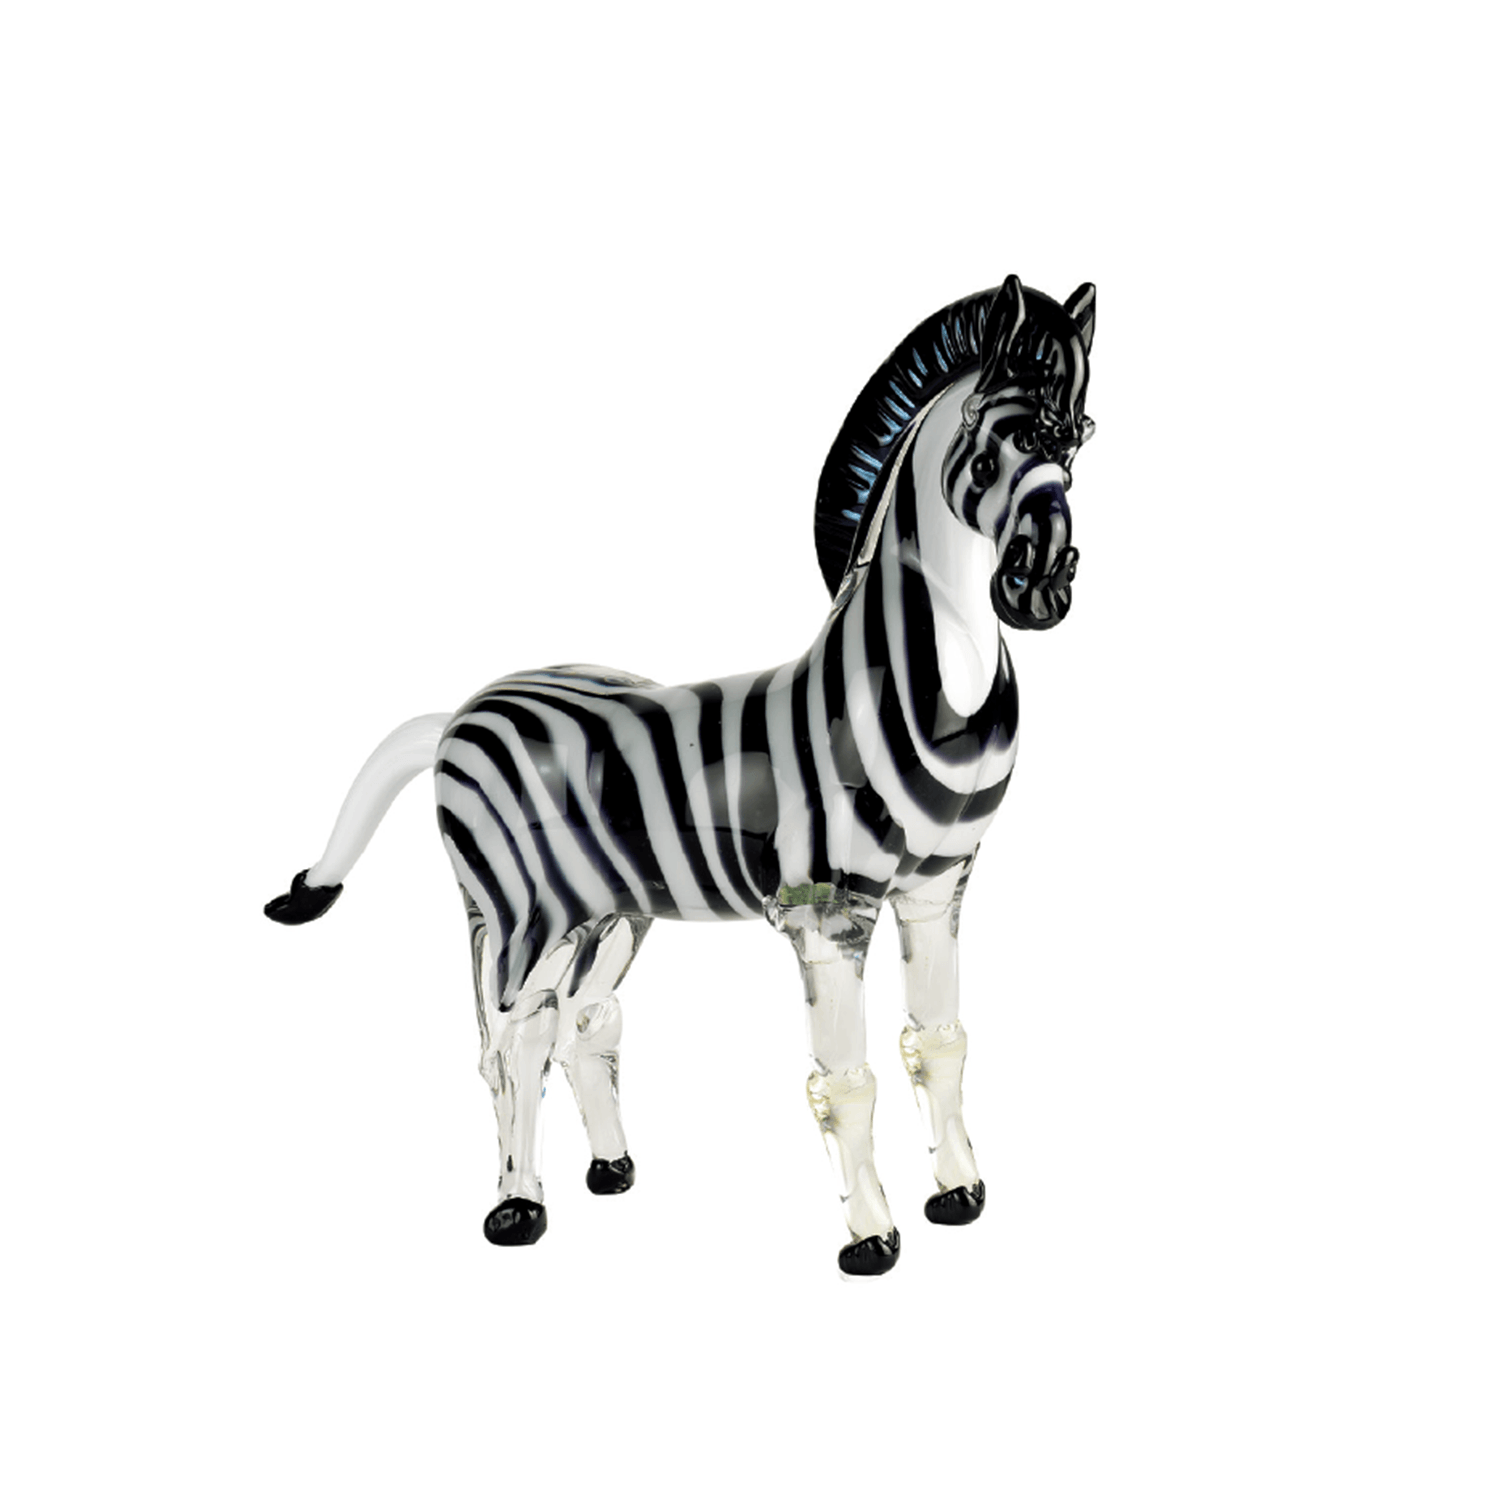 Arte di Murano Small Zebra Decor Accessories Arte di Murano 